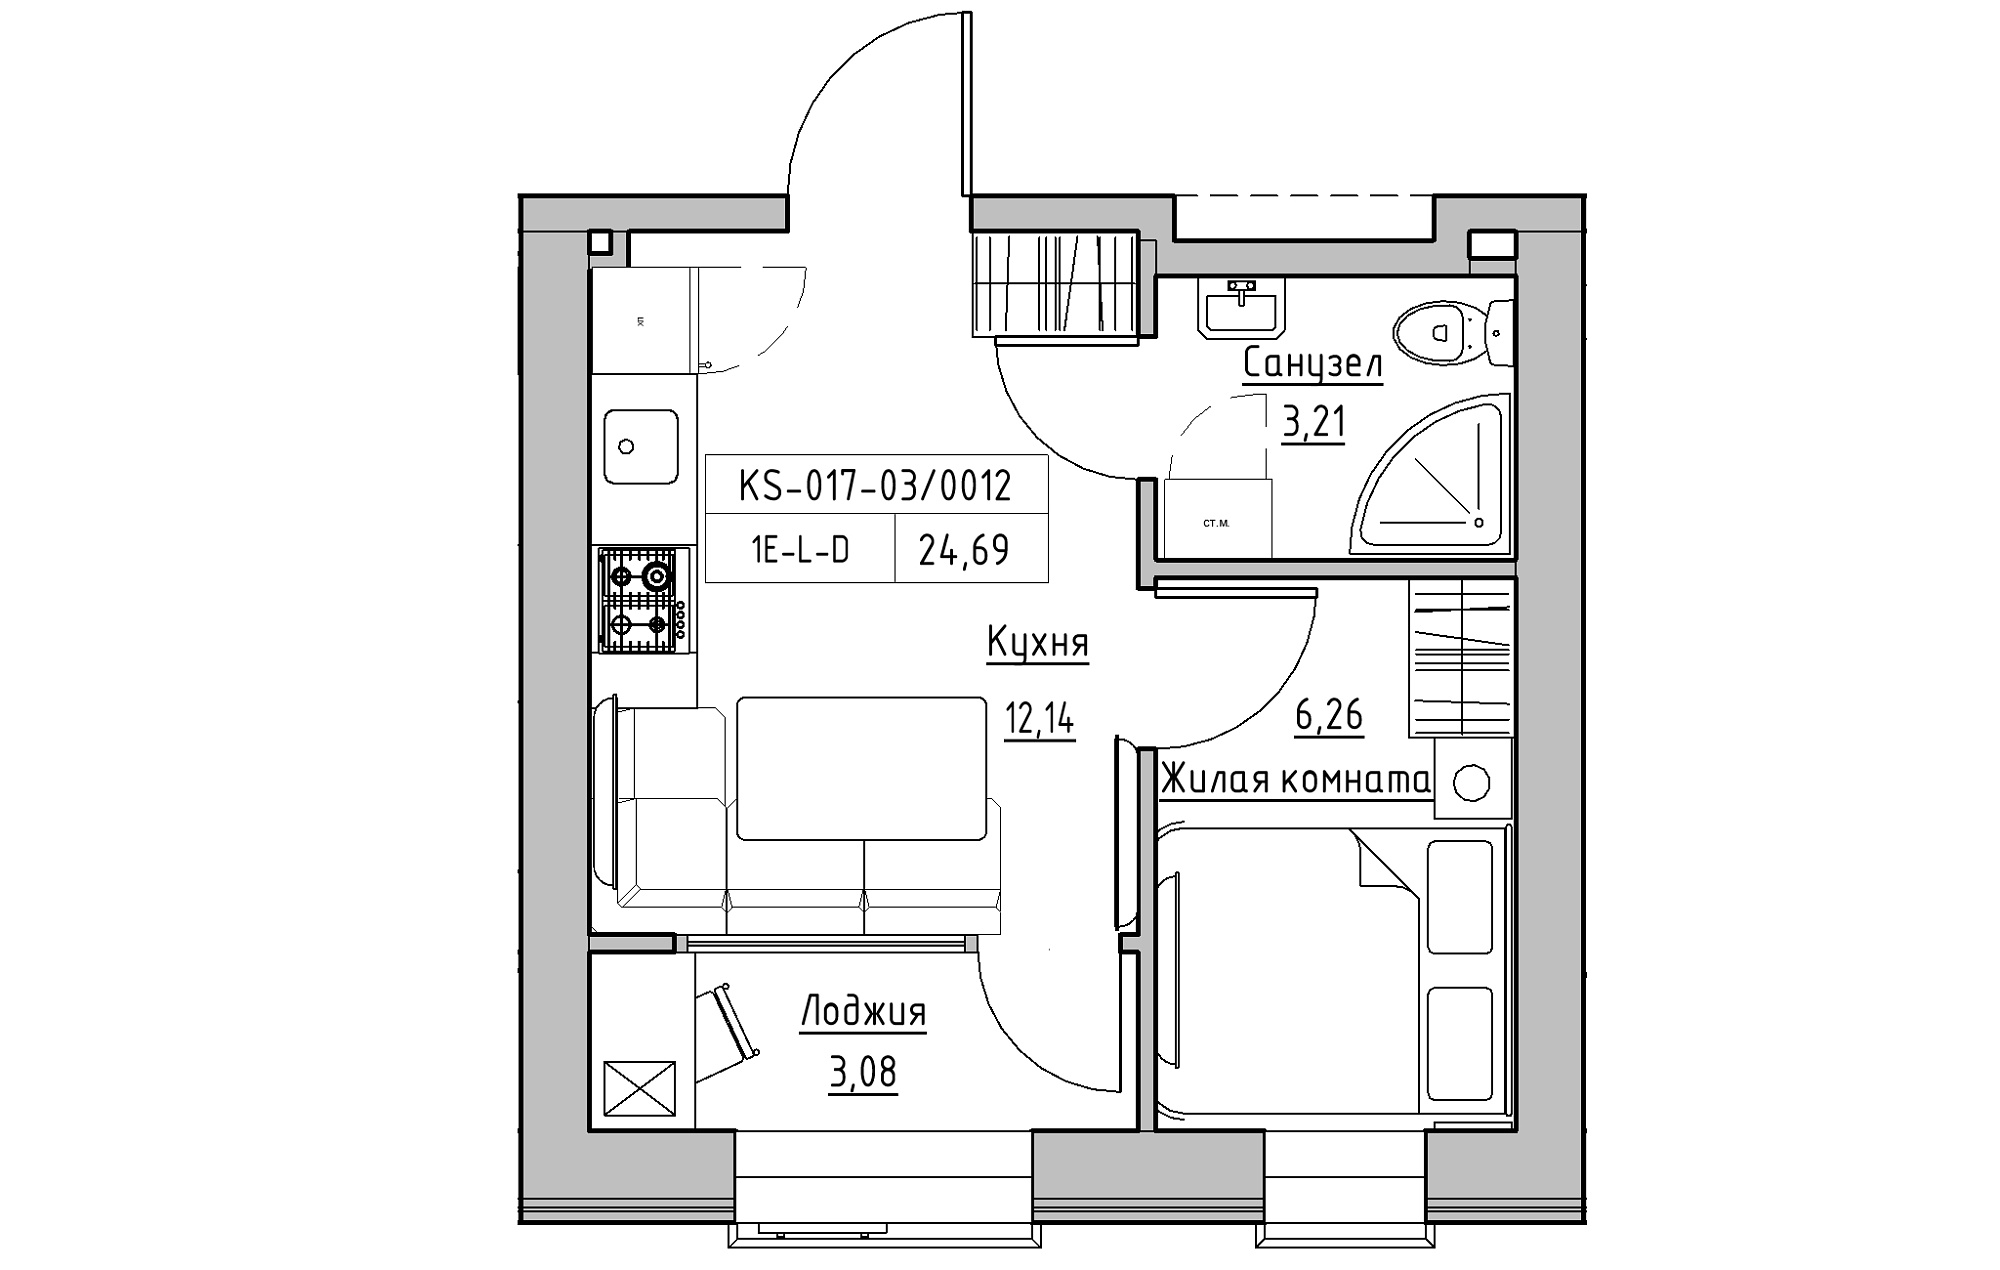 Планировка 1-к квартира площей 24.69м2, KS-017-03/0012.